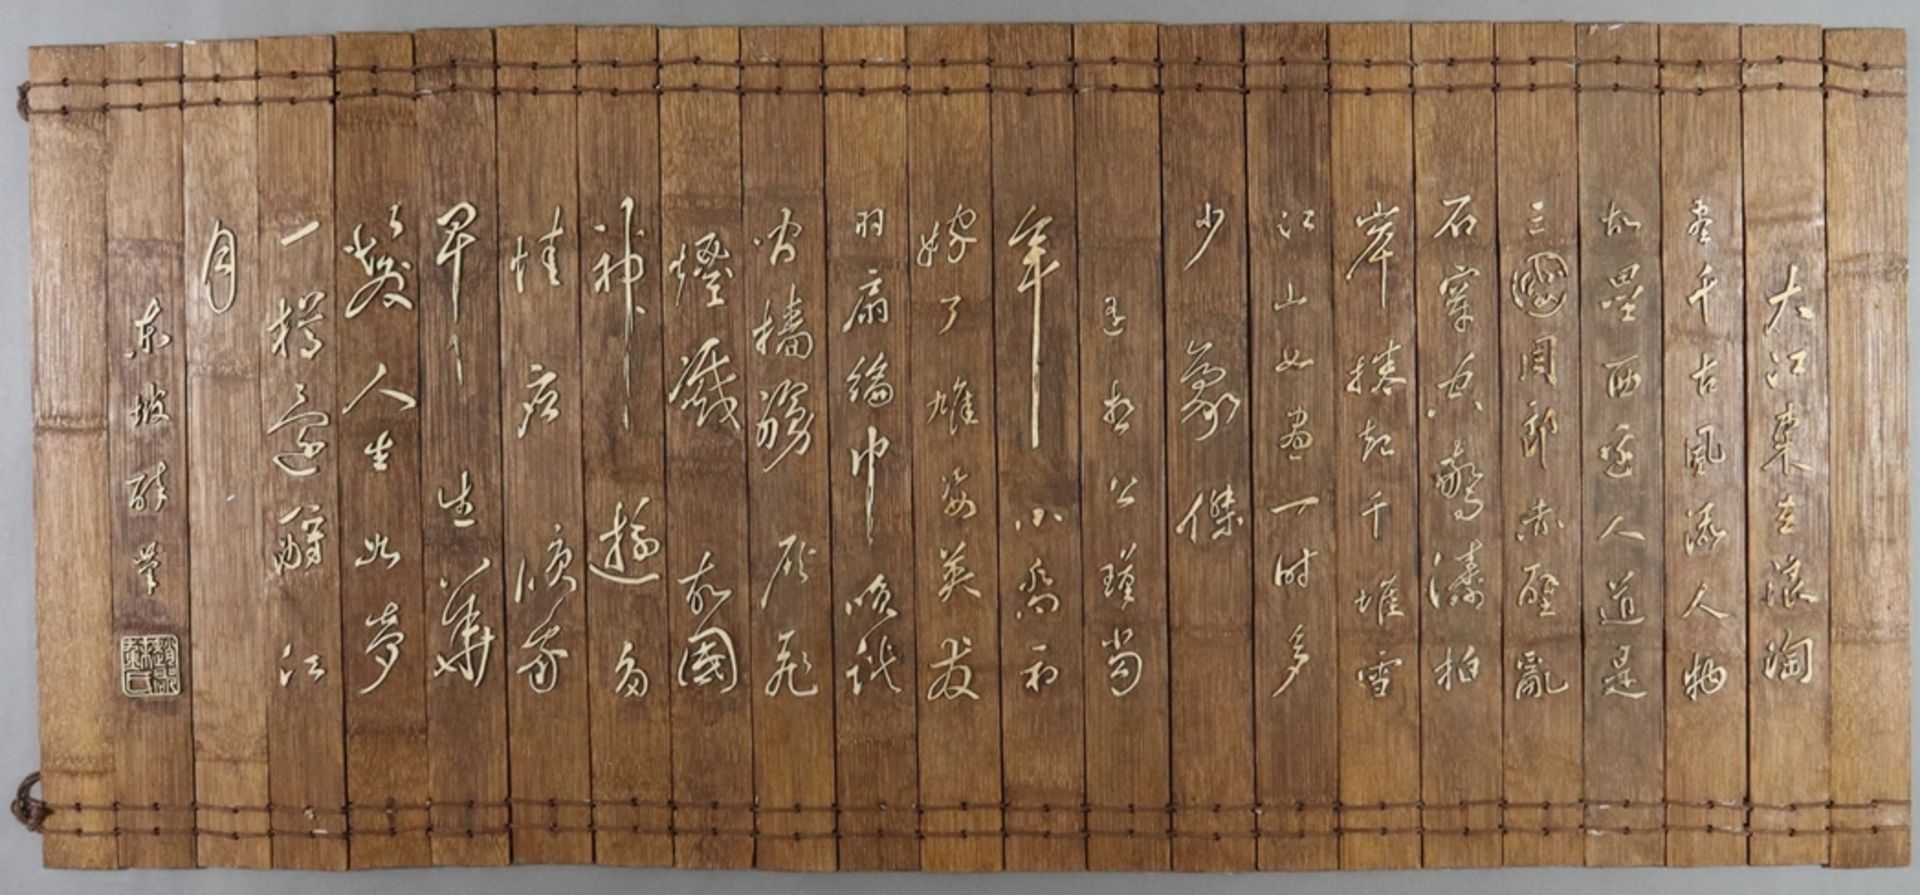 Bambusbuch mit Textzeilen - China, Qing-Dynastie, 19.Jh., 23 miteinander verbundene breite Lamellen